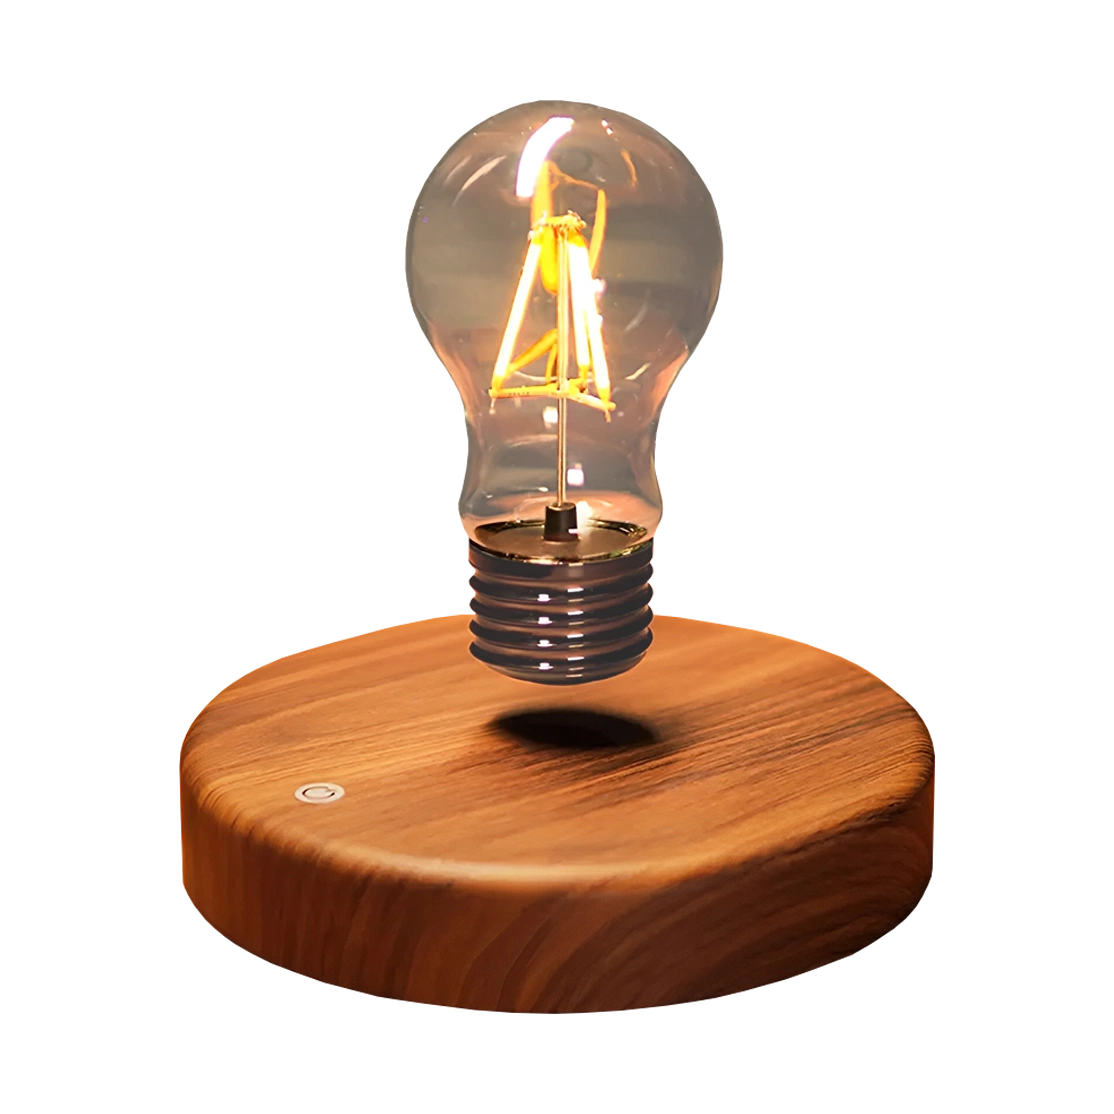 لامپ روشنایی رومیزی معلق مدل Levitating Light